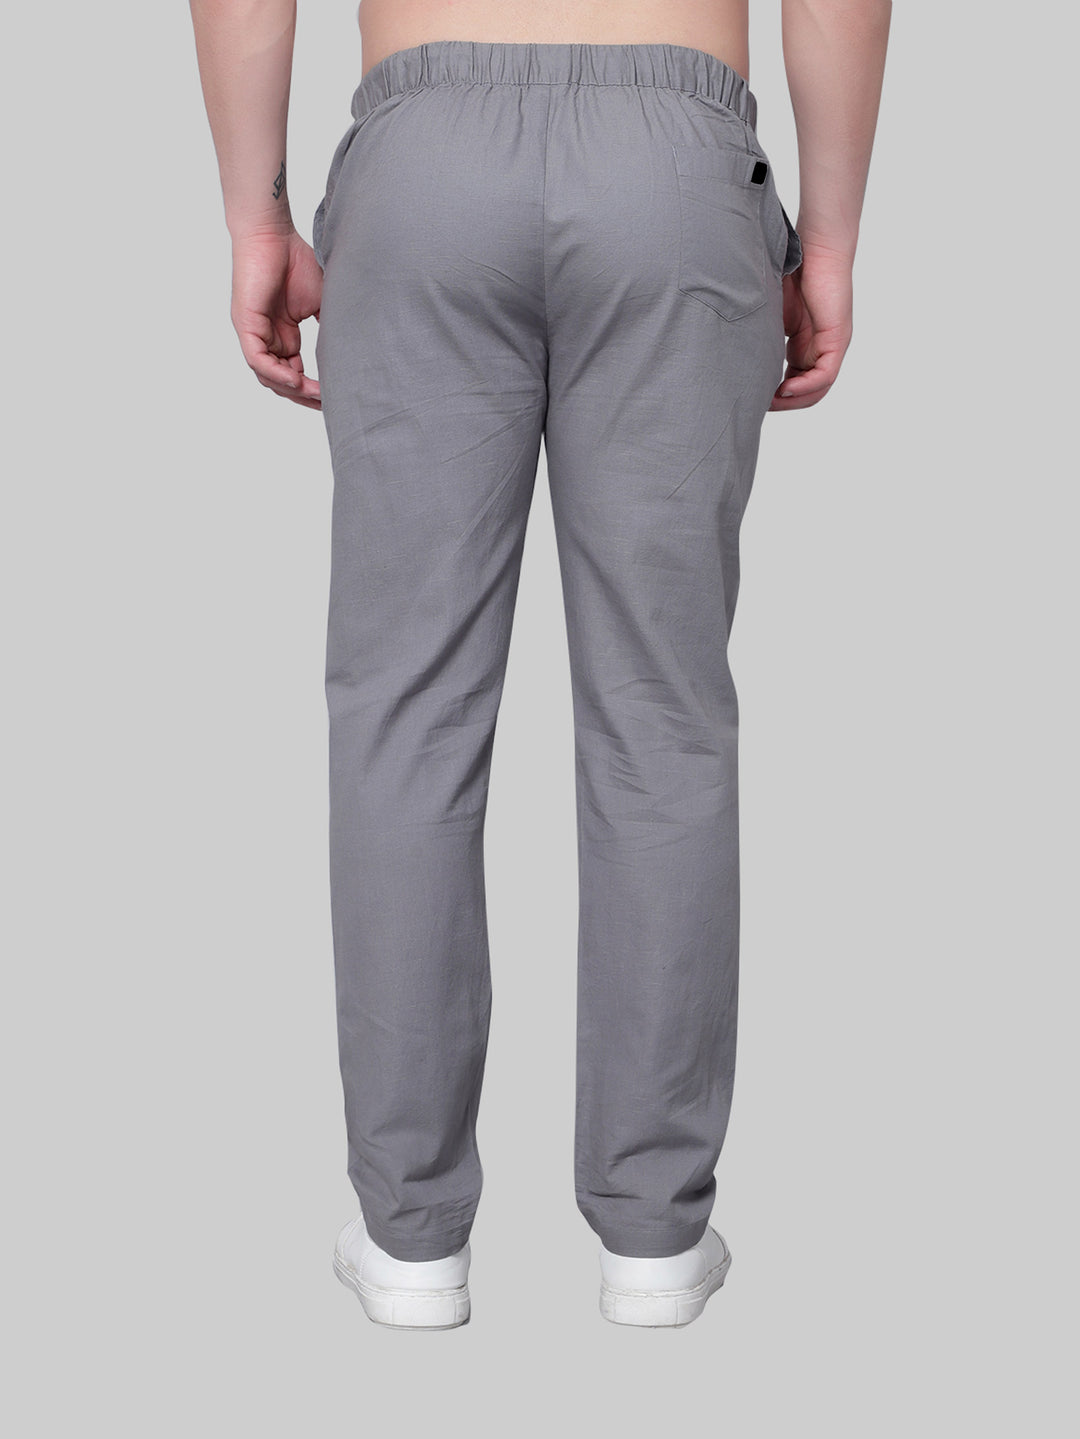 Koala Grey Pyjama Pants